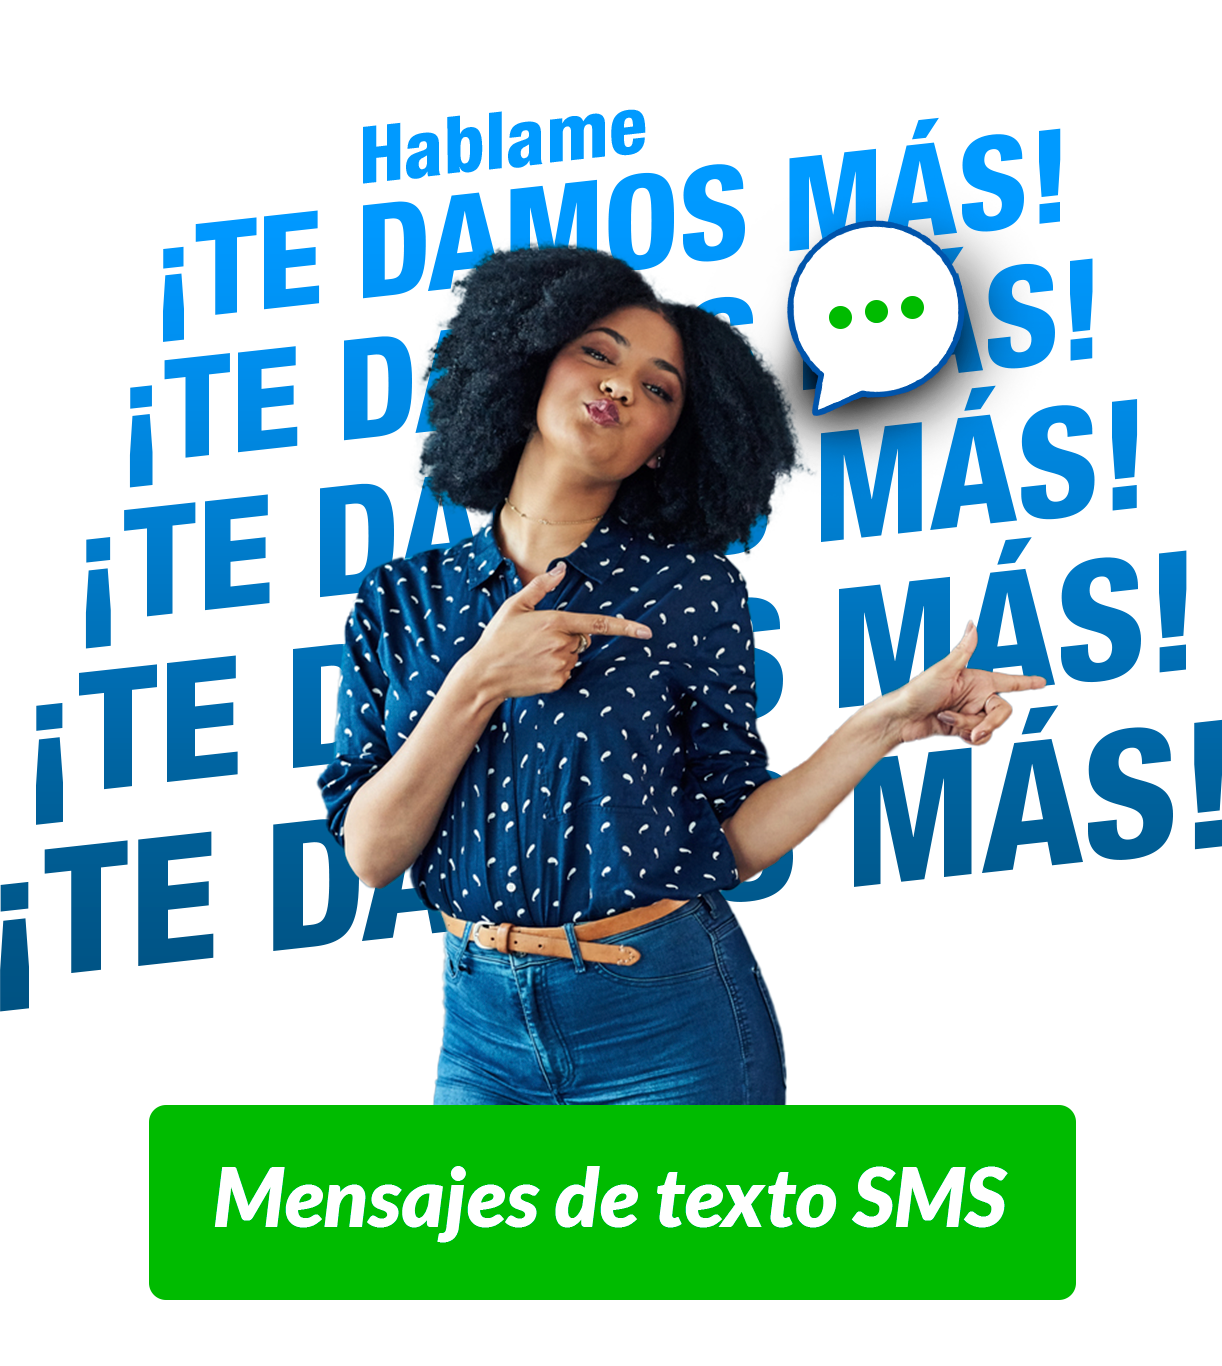 Envio mensajes de texto SMS Hablame Colombia